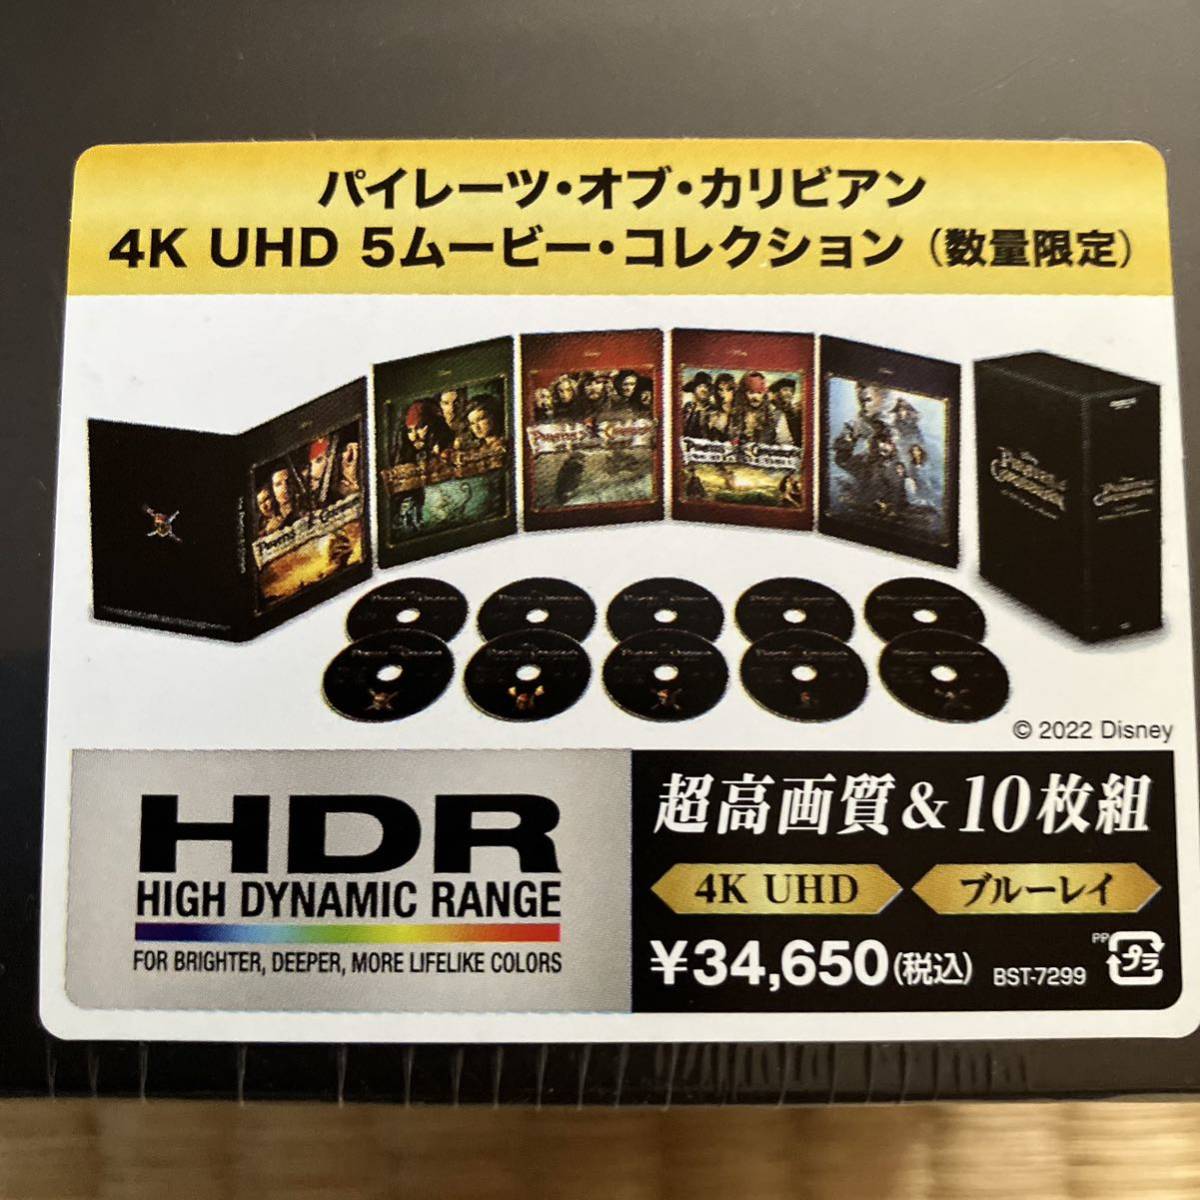 パイレーツ・オブ・カリビアン 4K UHD 5ムービー・コレクション Blu